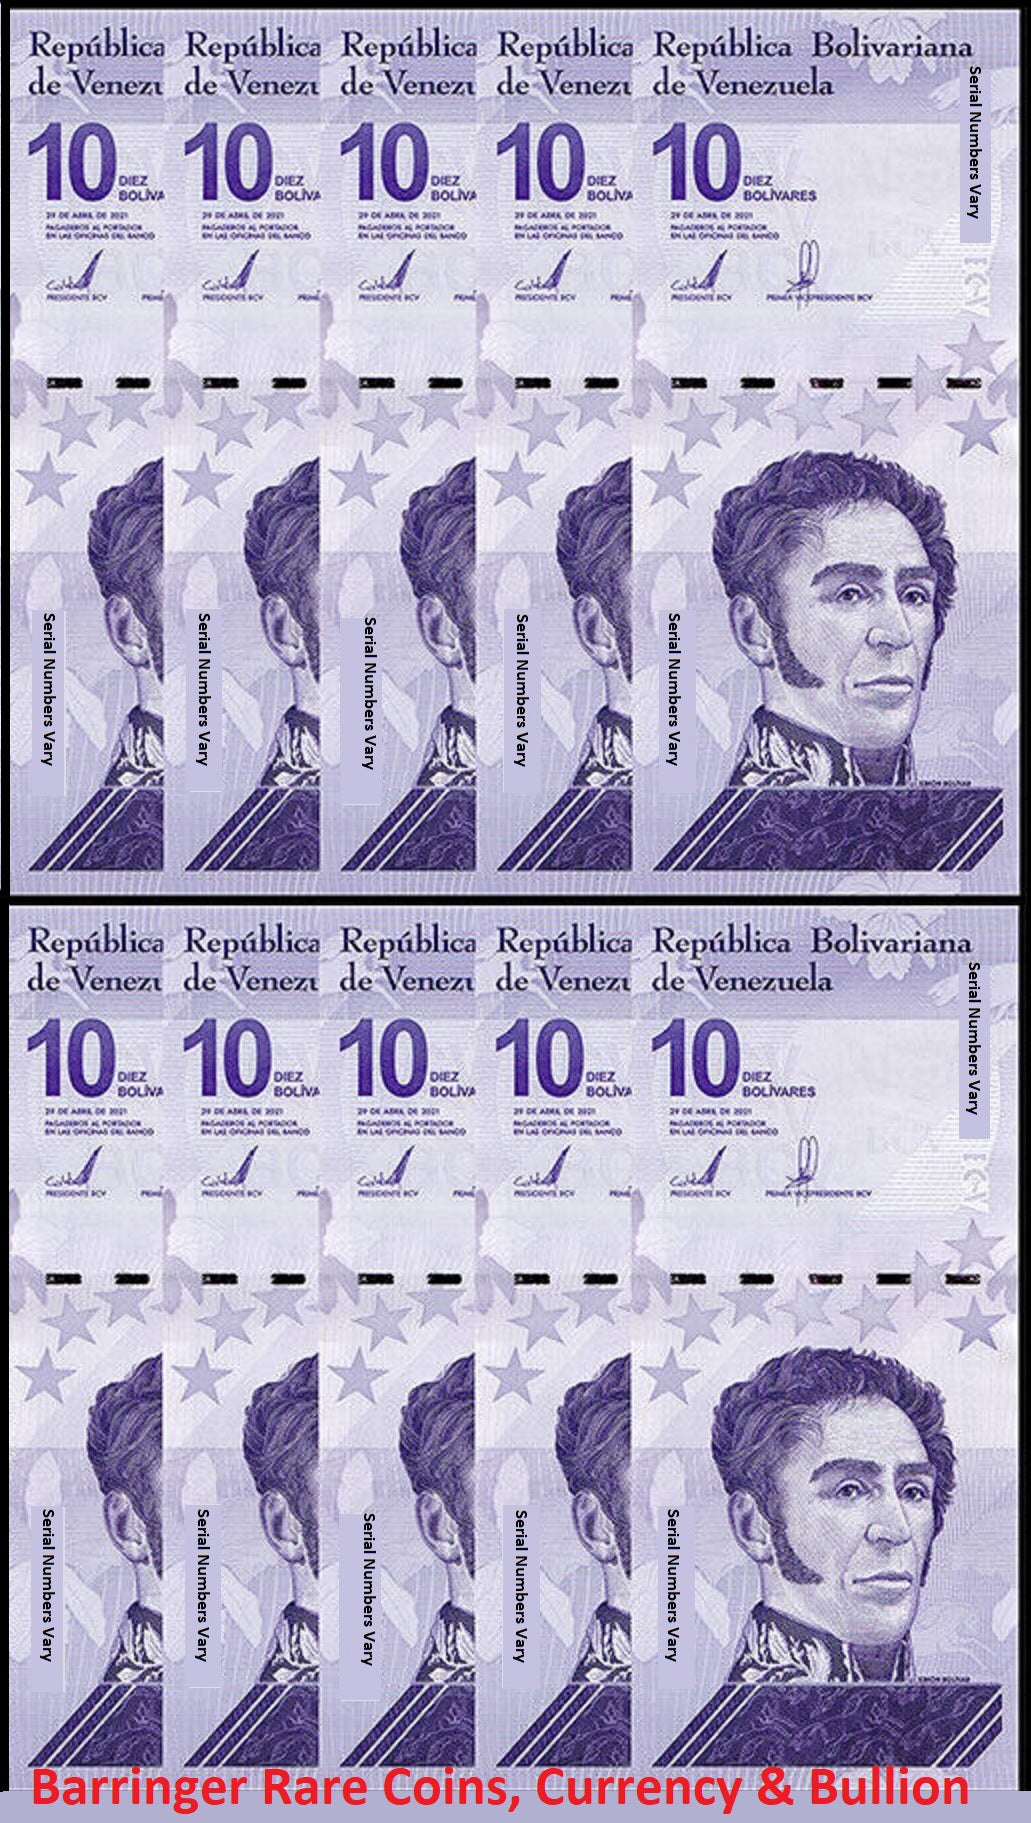 10X Venezuela 2021 10 Bolivares Digitale Banknote UNC 10 Million P119 Per 10 Notes